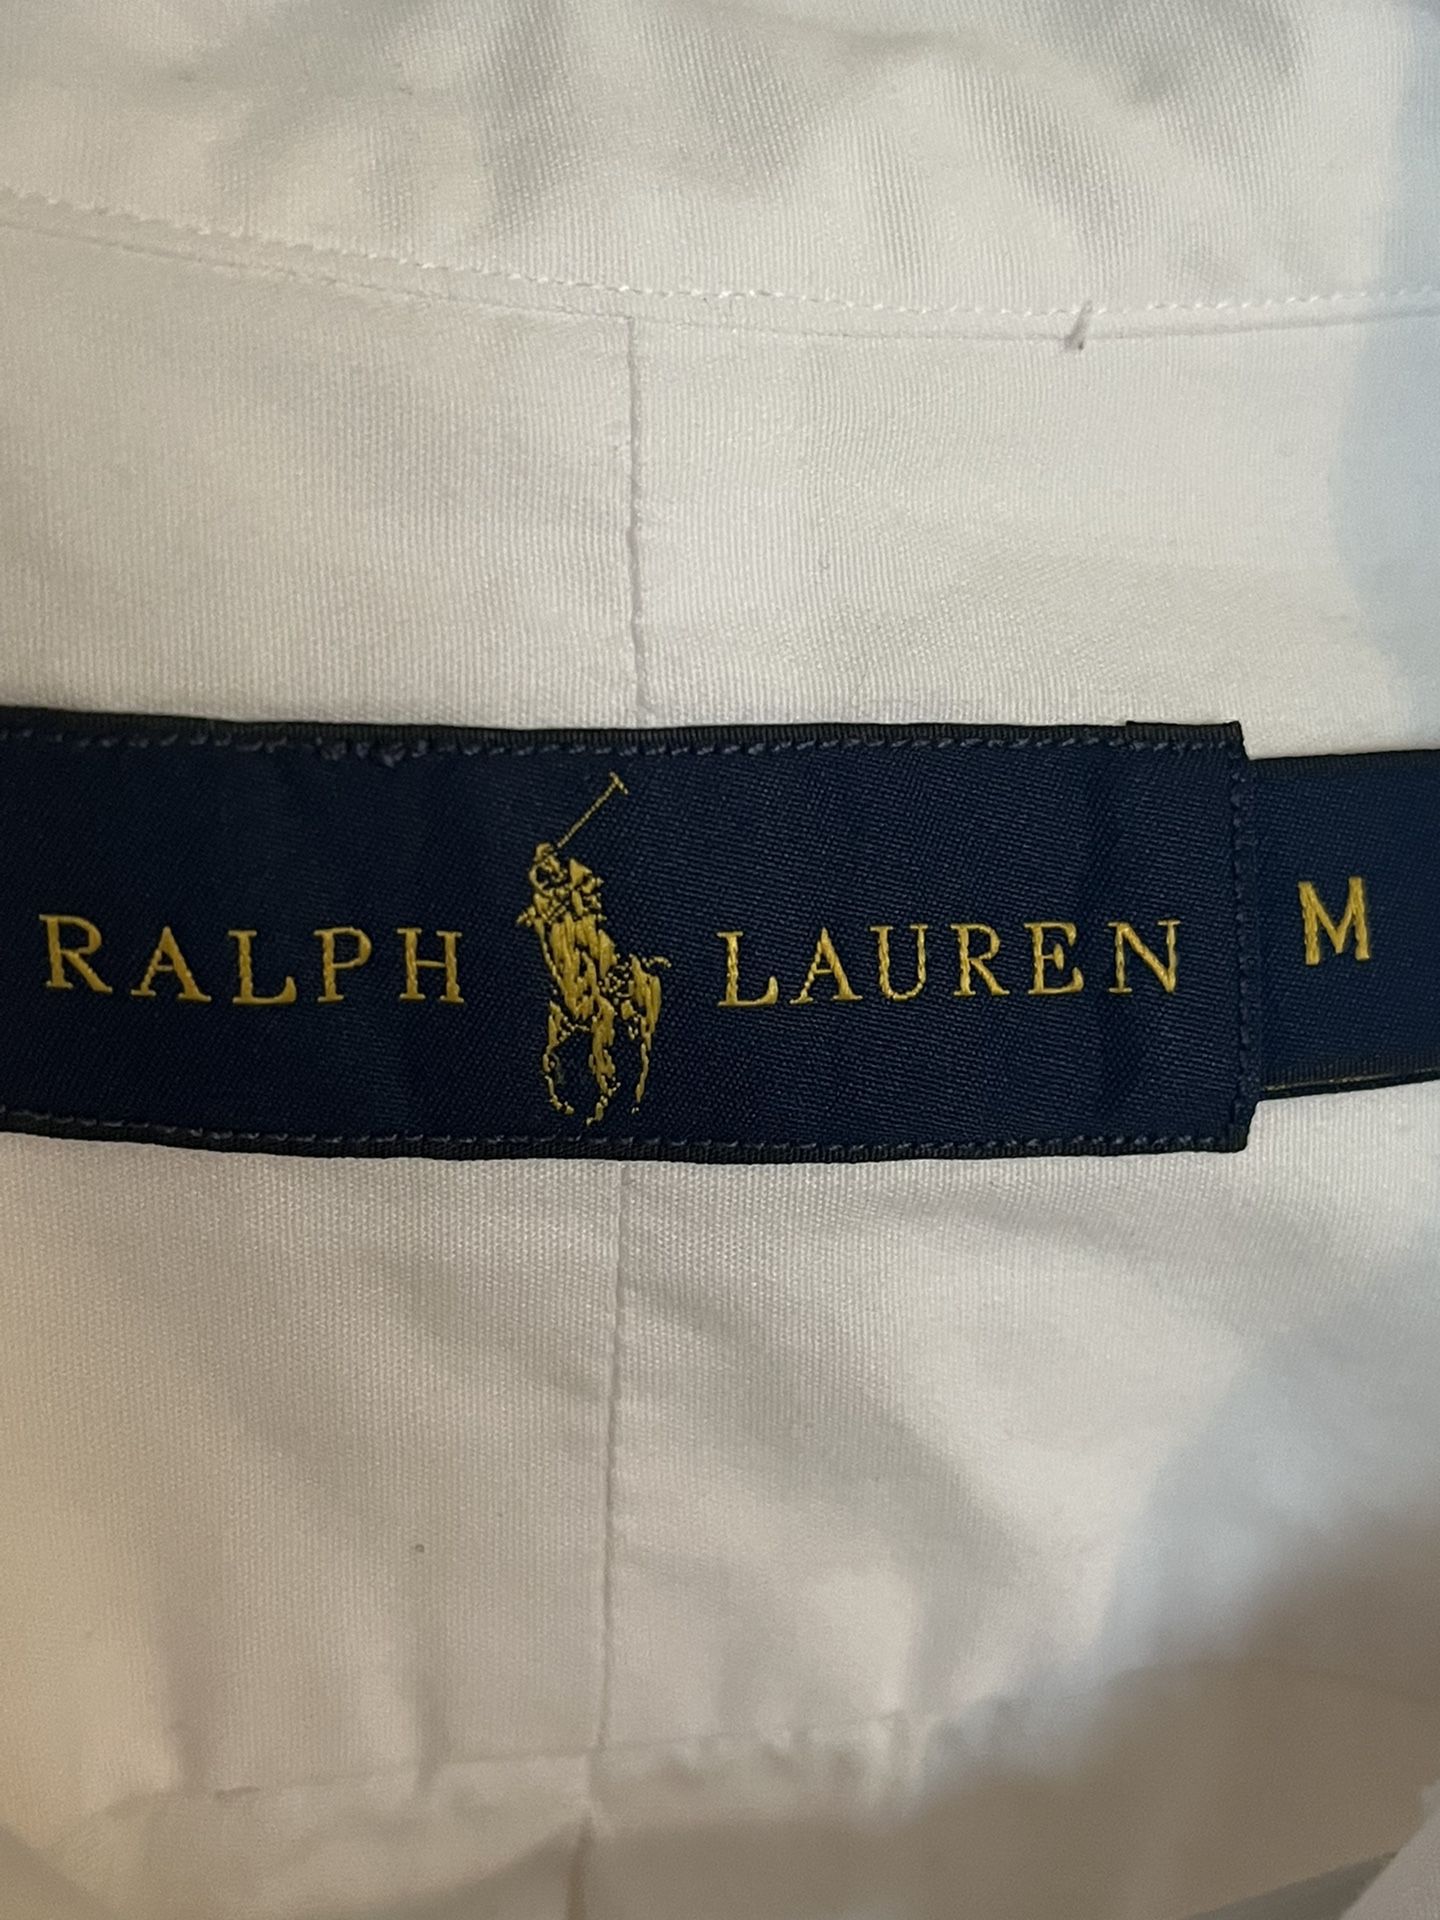 Mens Ralph Lauren White Dress Shirt